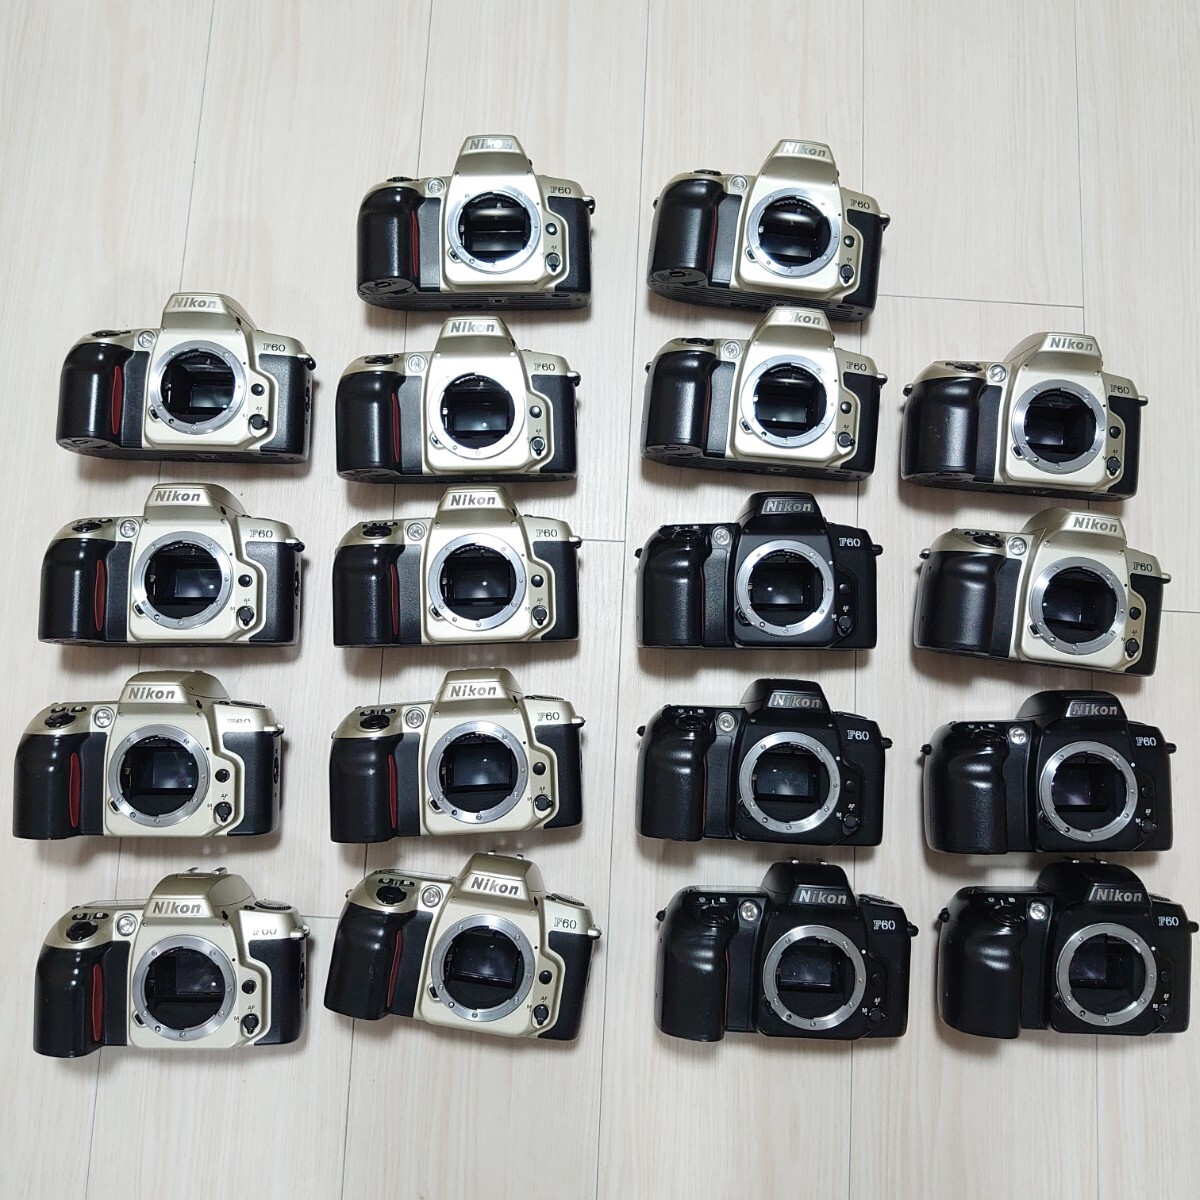 NIKON ニコン F60 18台 フィルムカメラ 一眼レフカメラ まとめ売り まとめて 大量セット 整理品 引越しでカメラ用品色々出品中_画像1